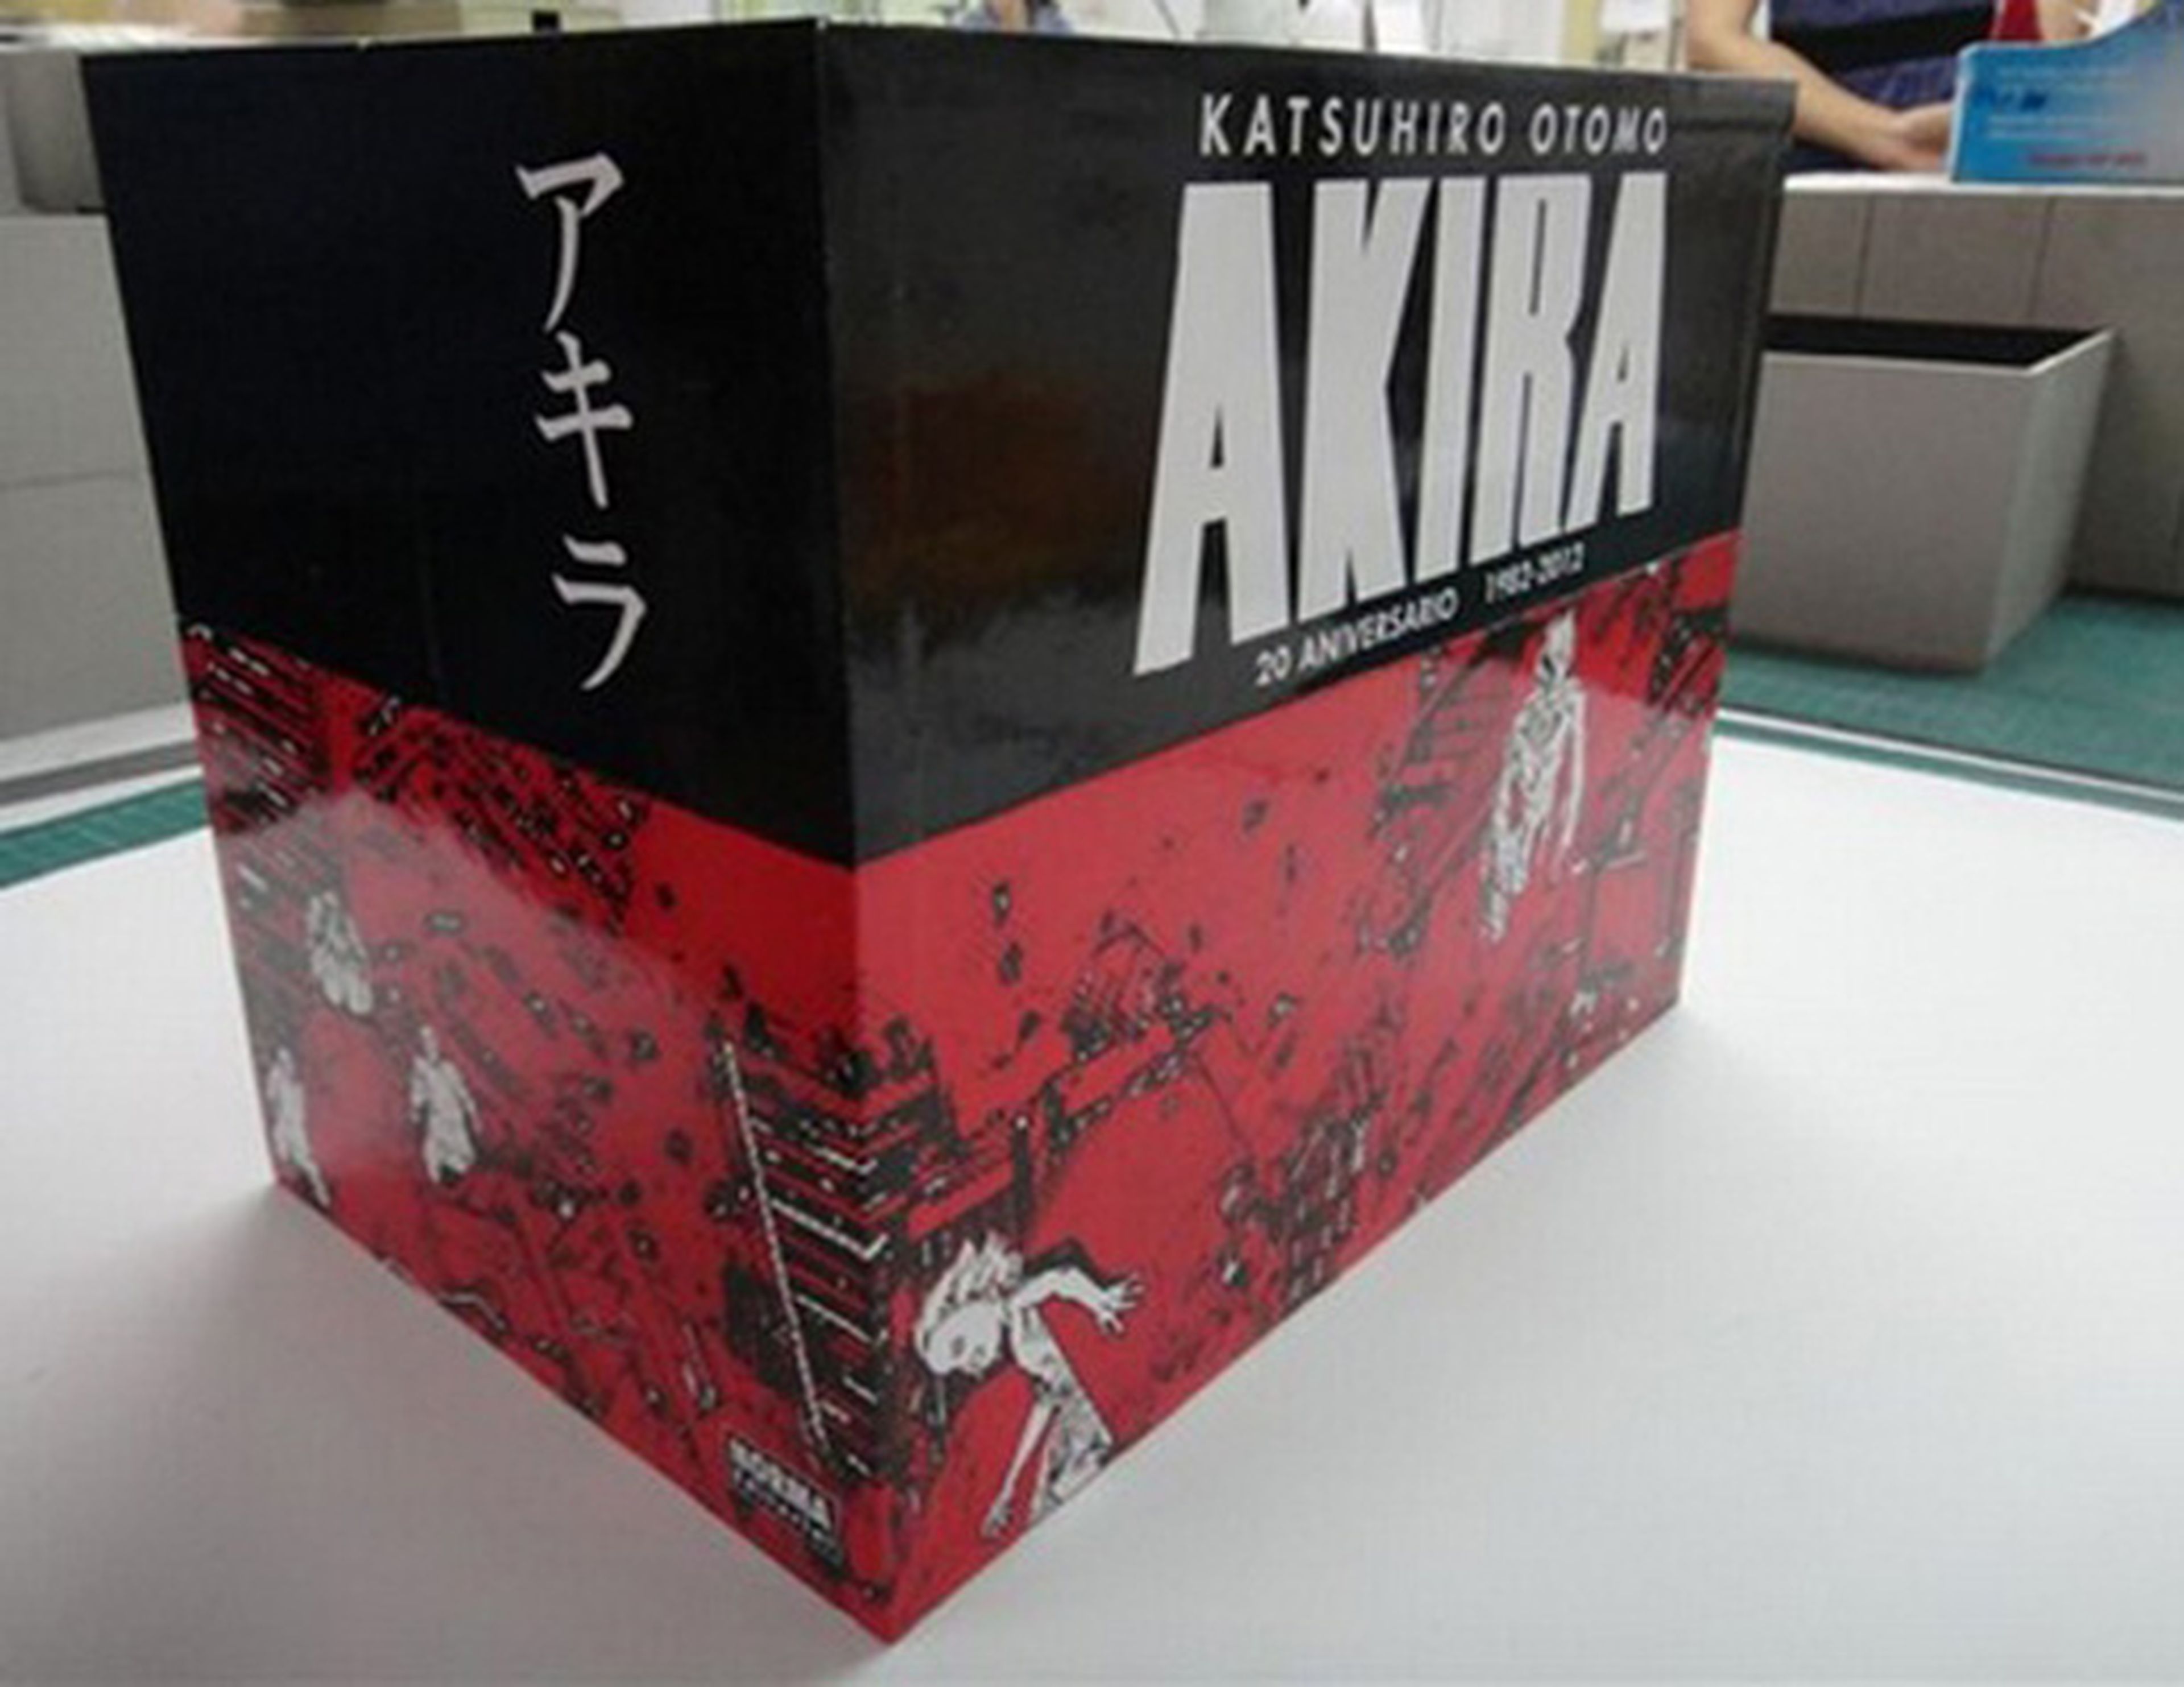 Edición 30 aniversario de Akira